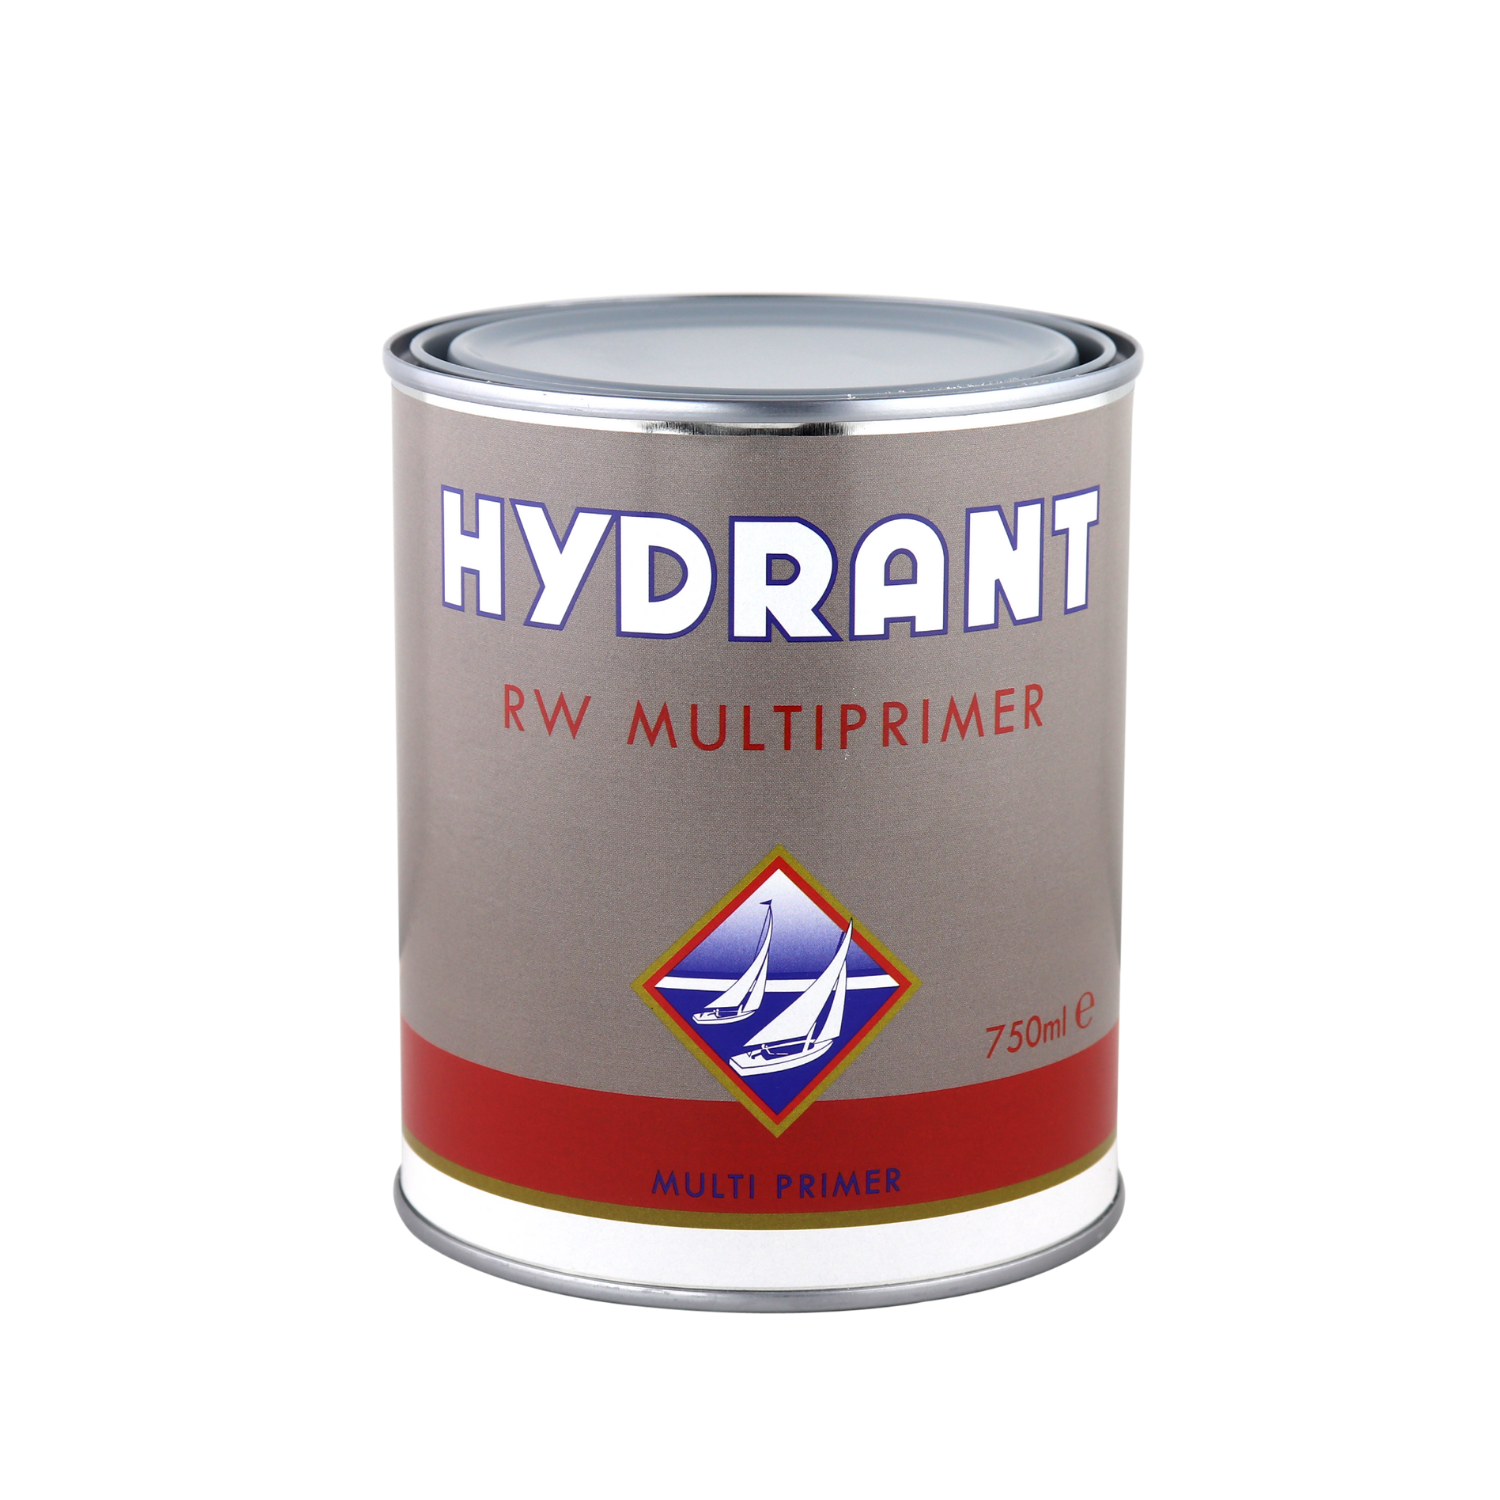 Hydrant RW primer